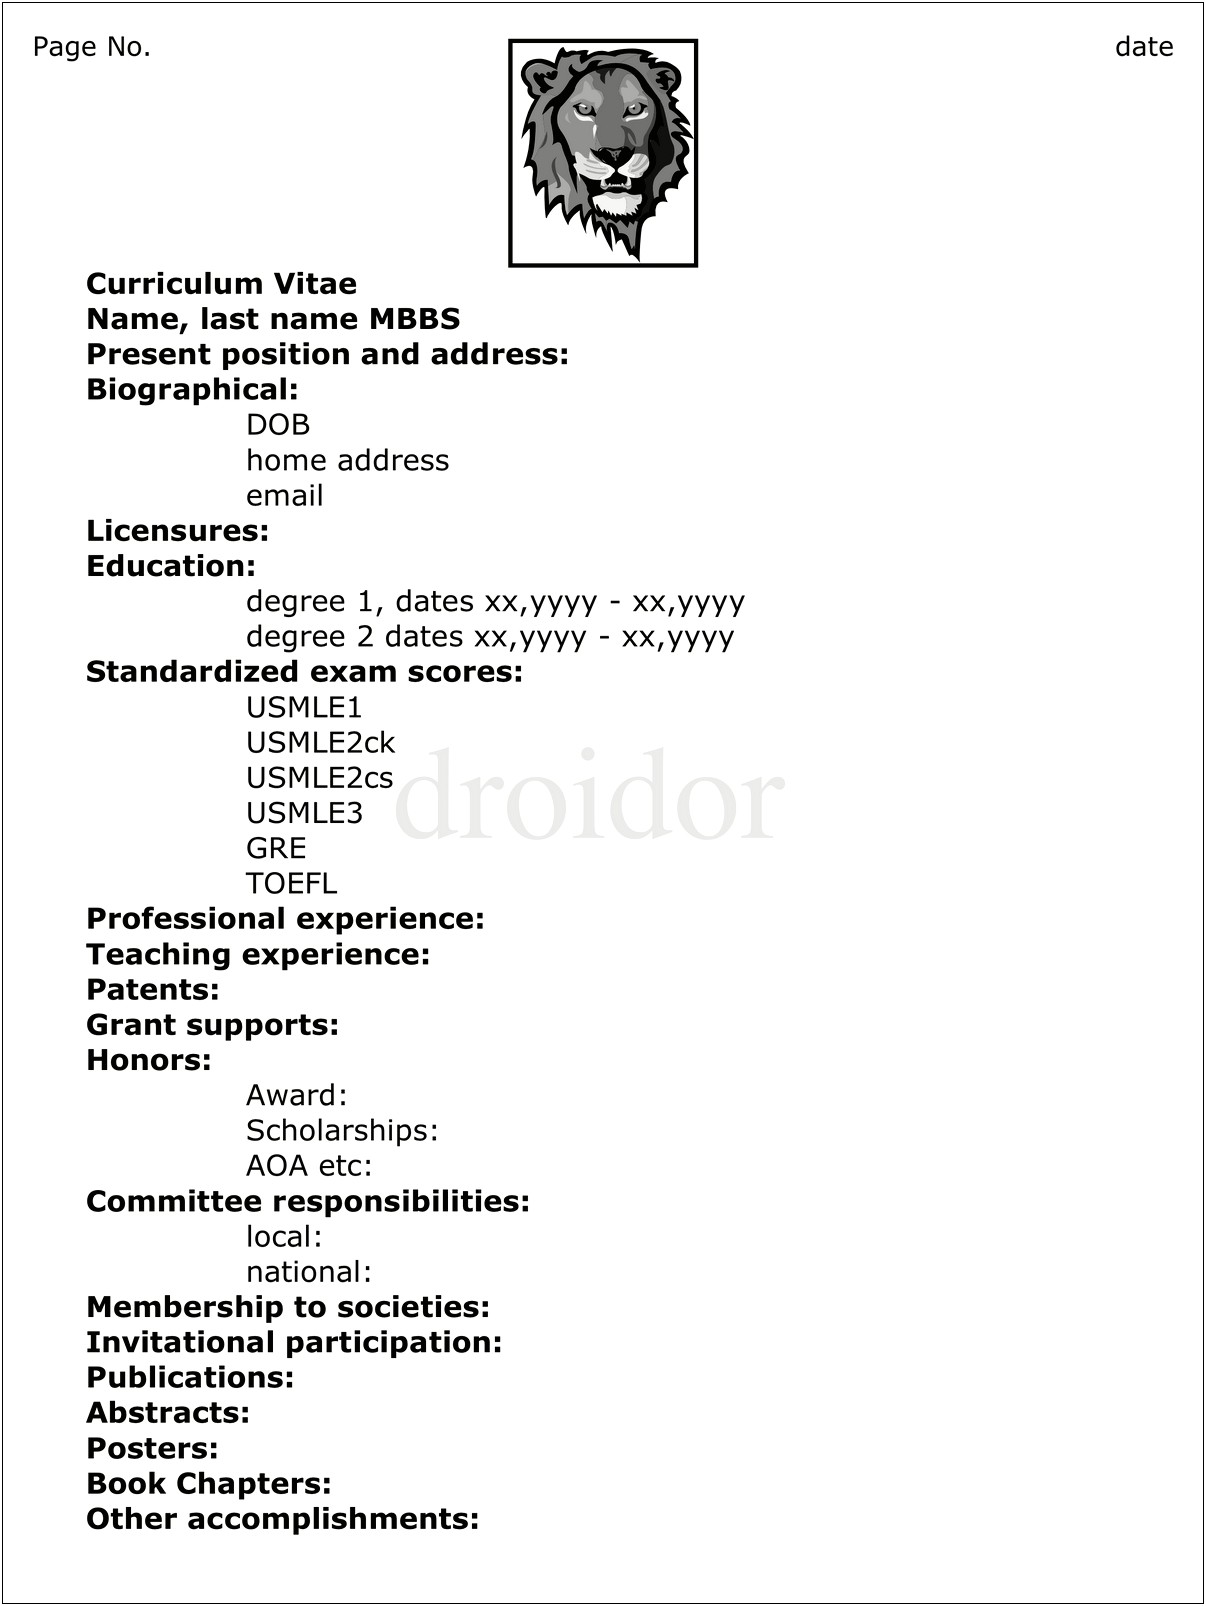 Sample Cv Resume For Residency